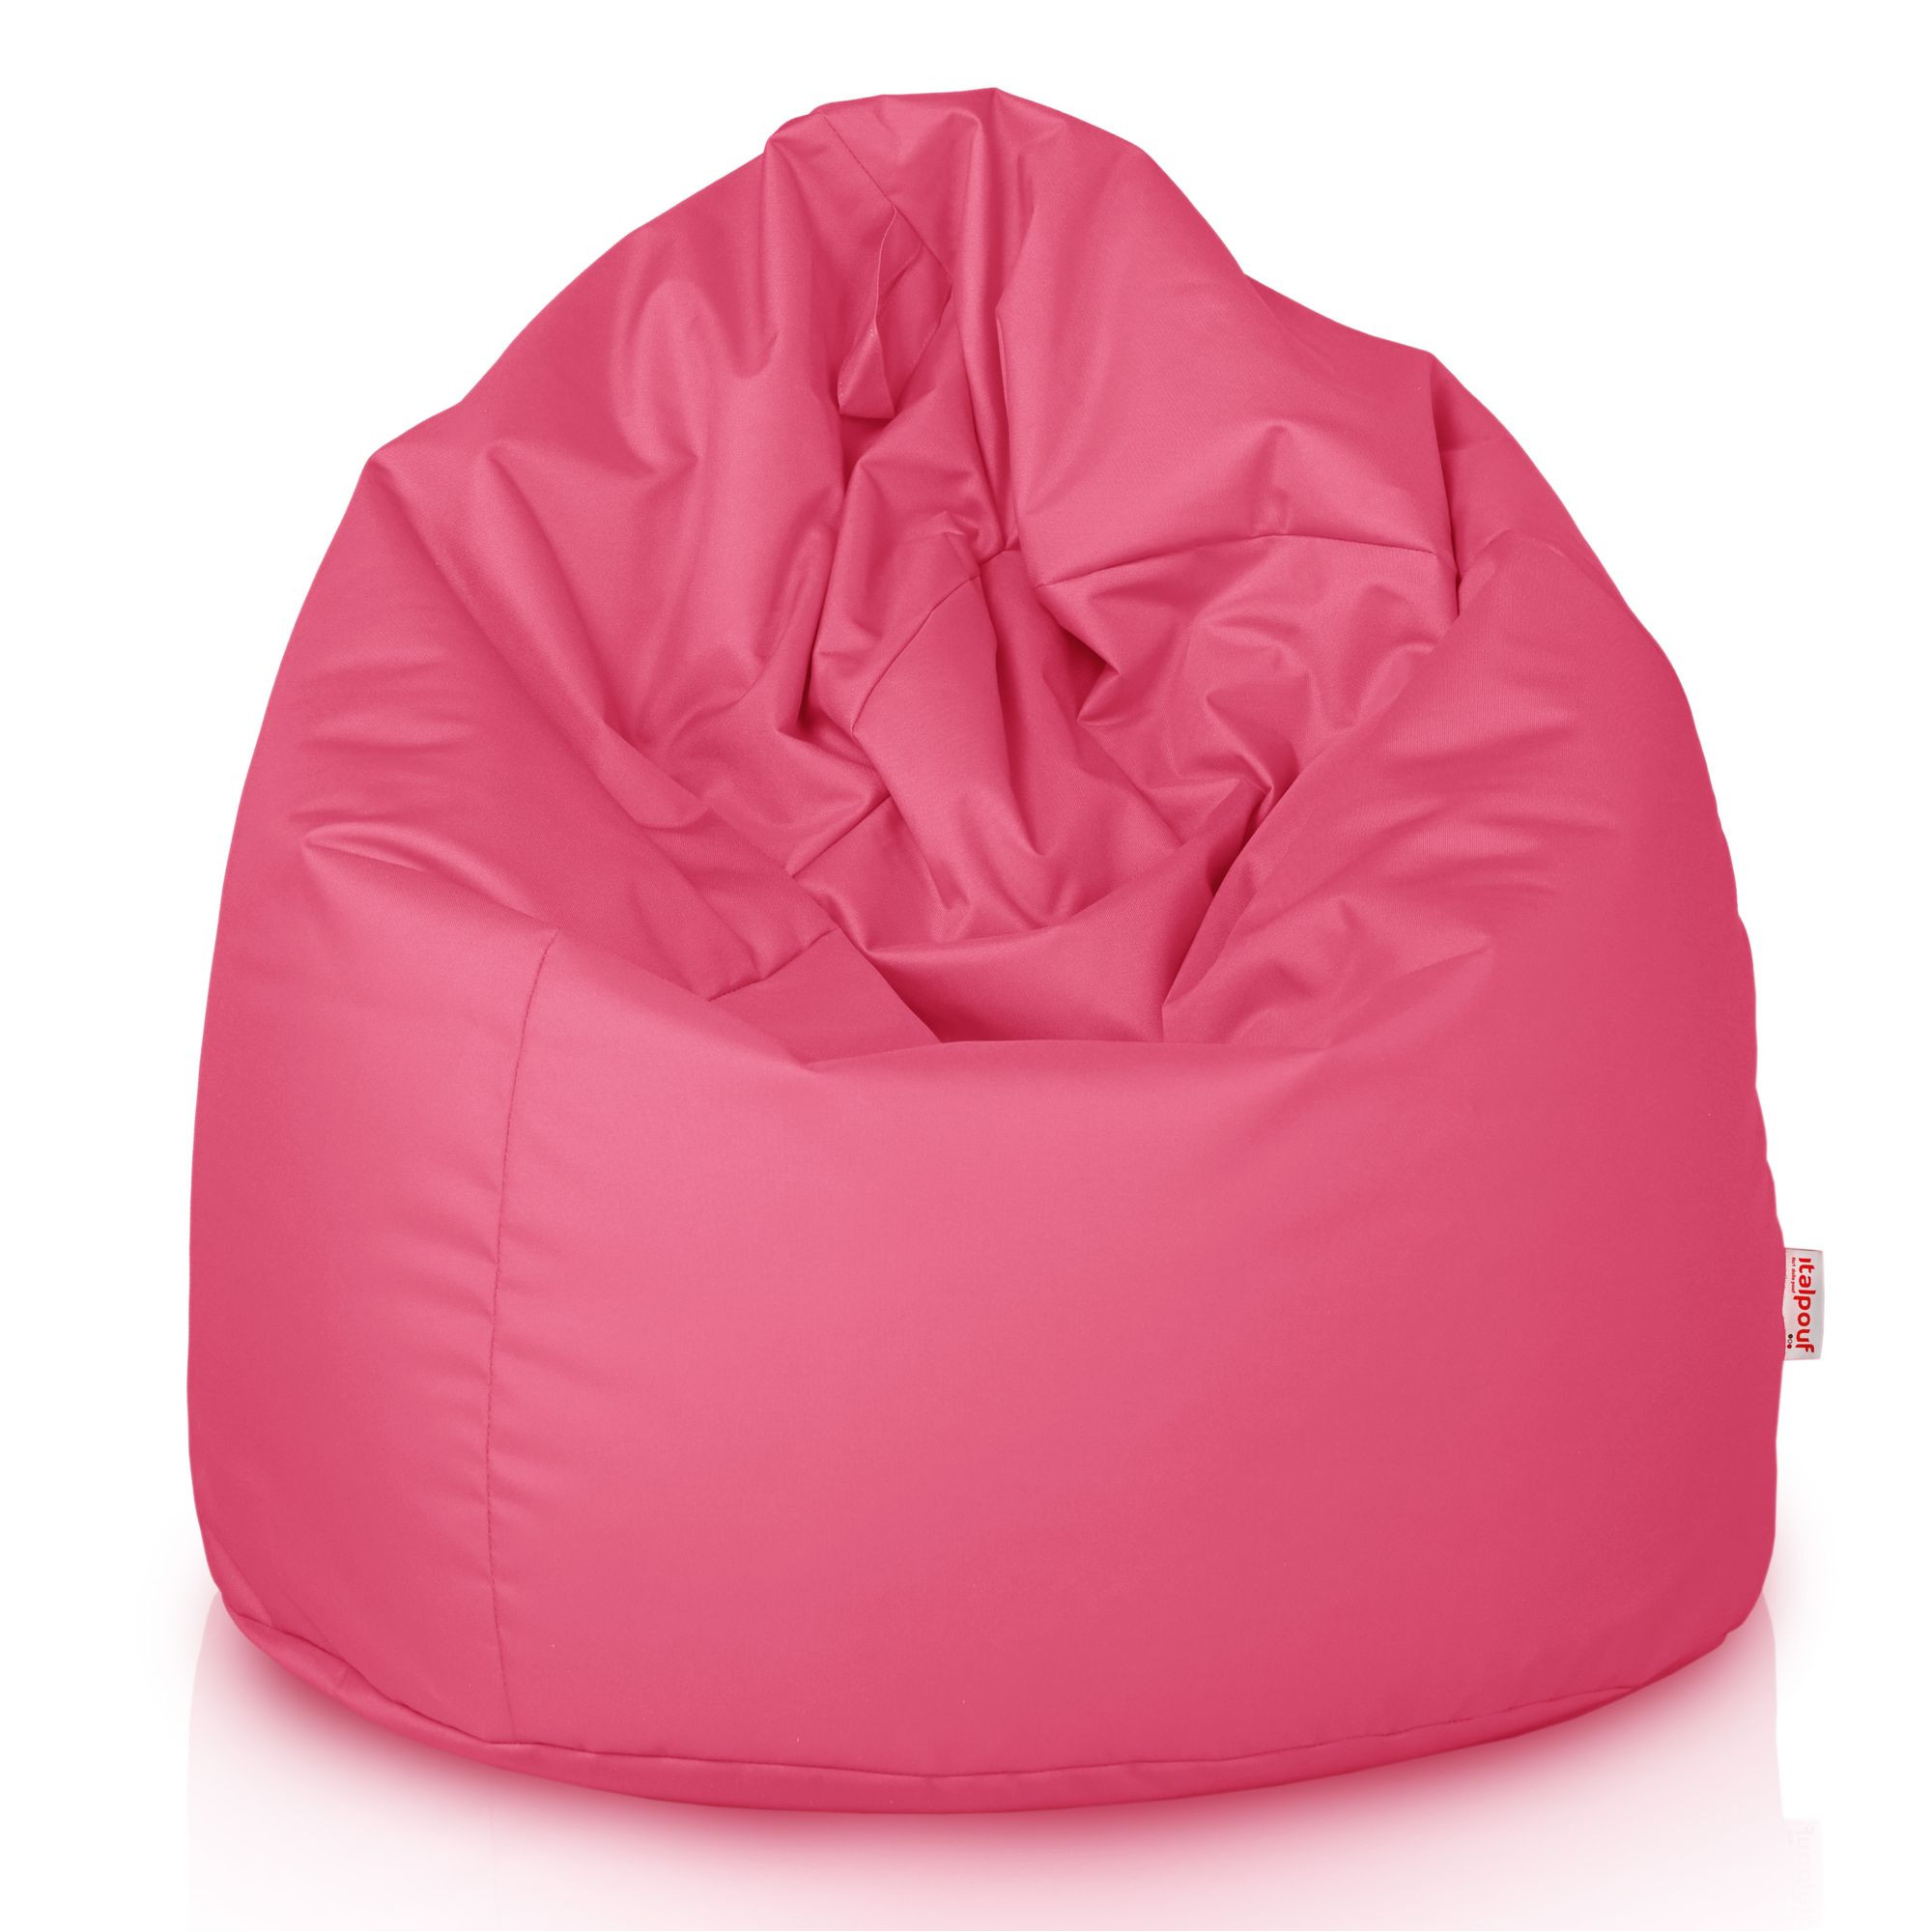 Pouf sacco per bambini da esterno. Poltrona sacco rosa impermeabile